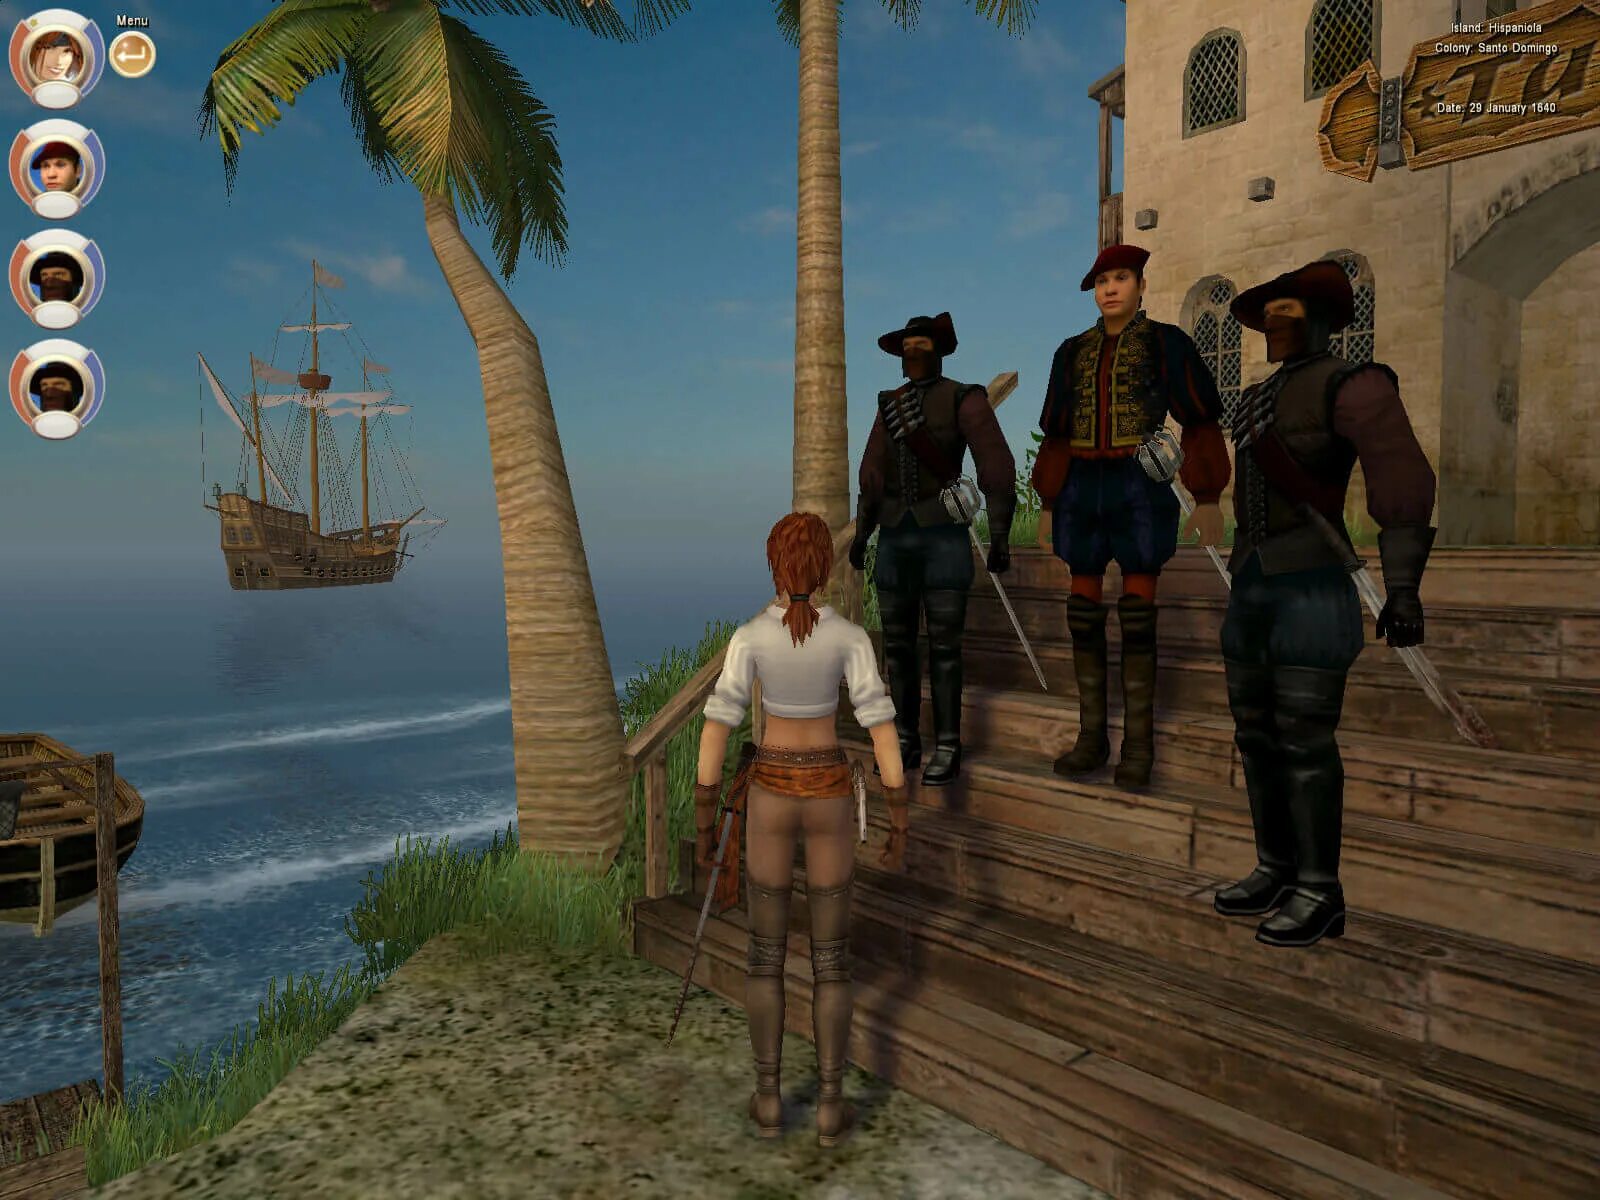 Корсары 3 пираты Карибского моря. Корсары III (2005). Age of Pirates: Caribbean Tales игра. Натаниэль Хаук Корсары 2. Игра про пиратов карибского